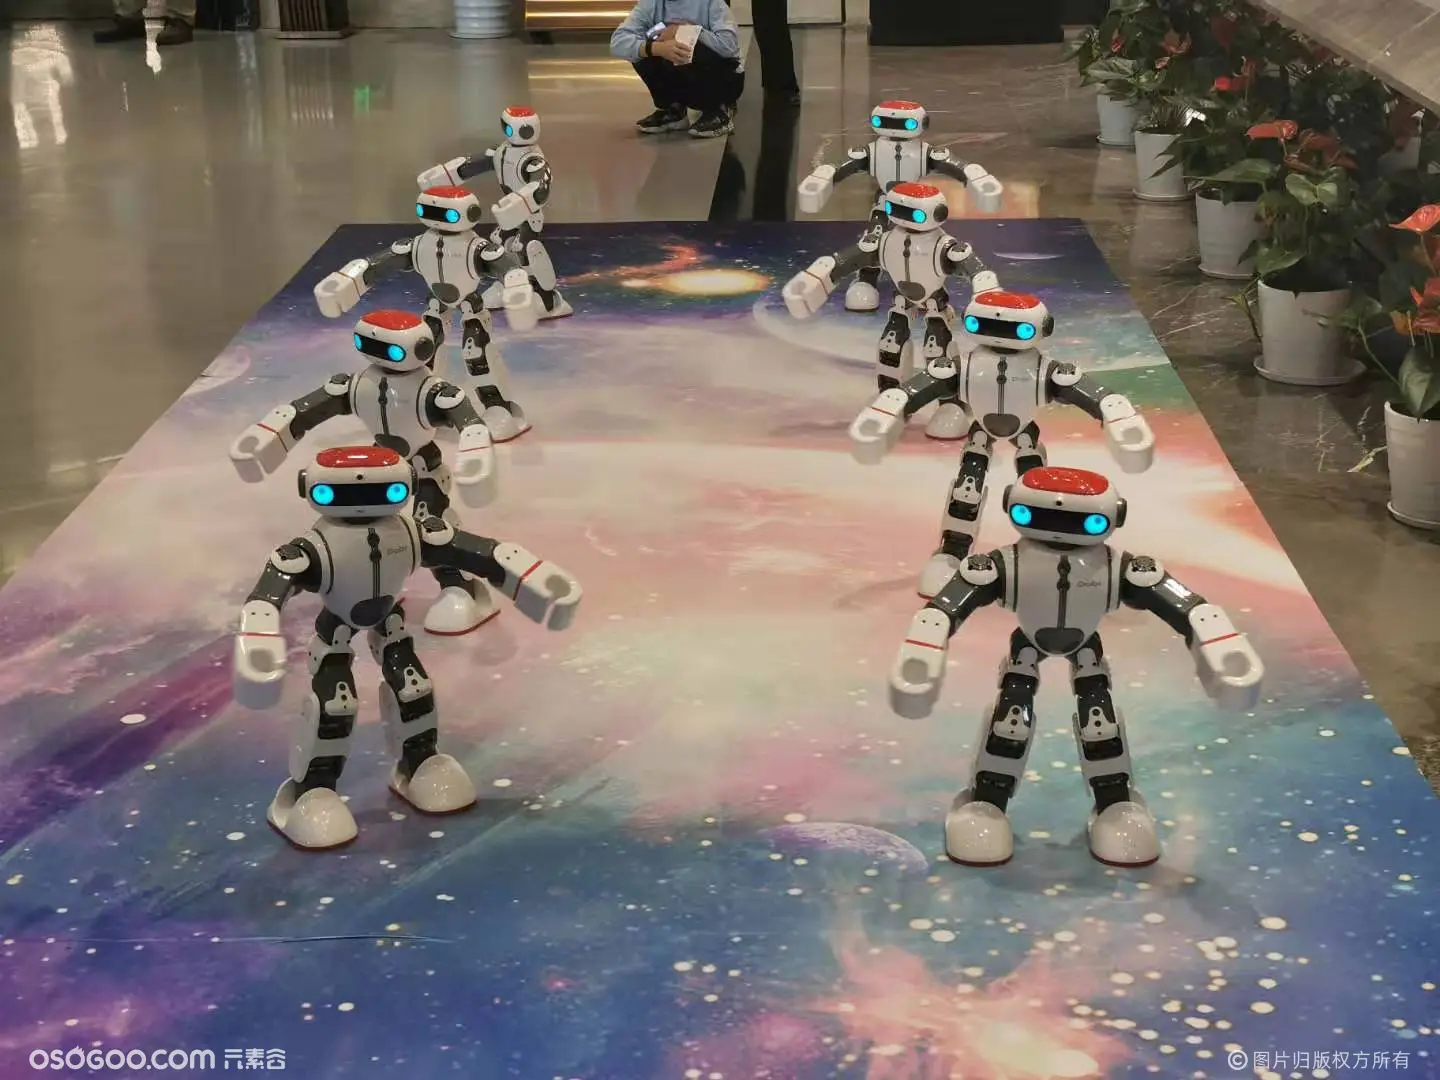 活动展会机器人租赁 展厅讲解互动机器人展览科技周